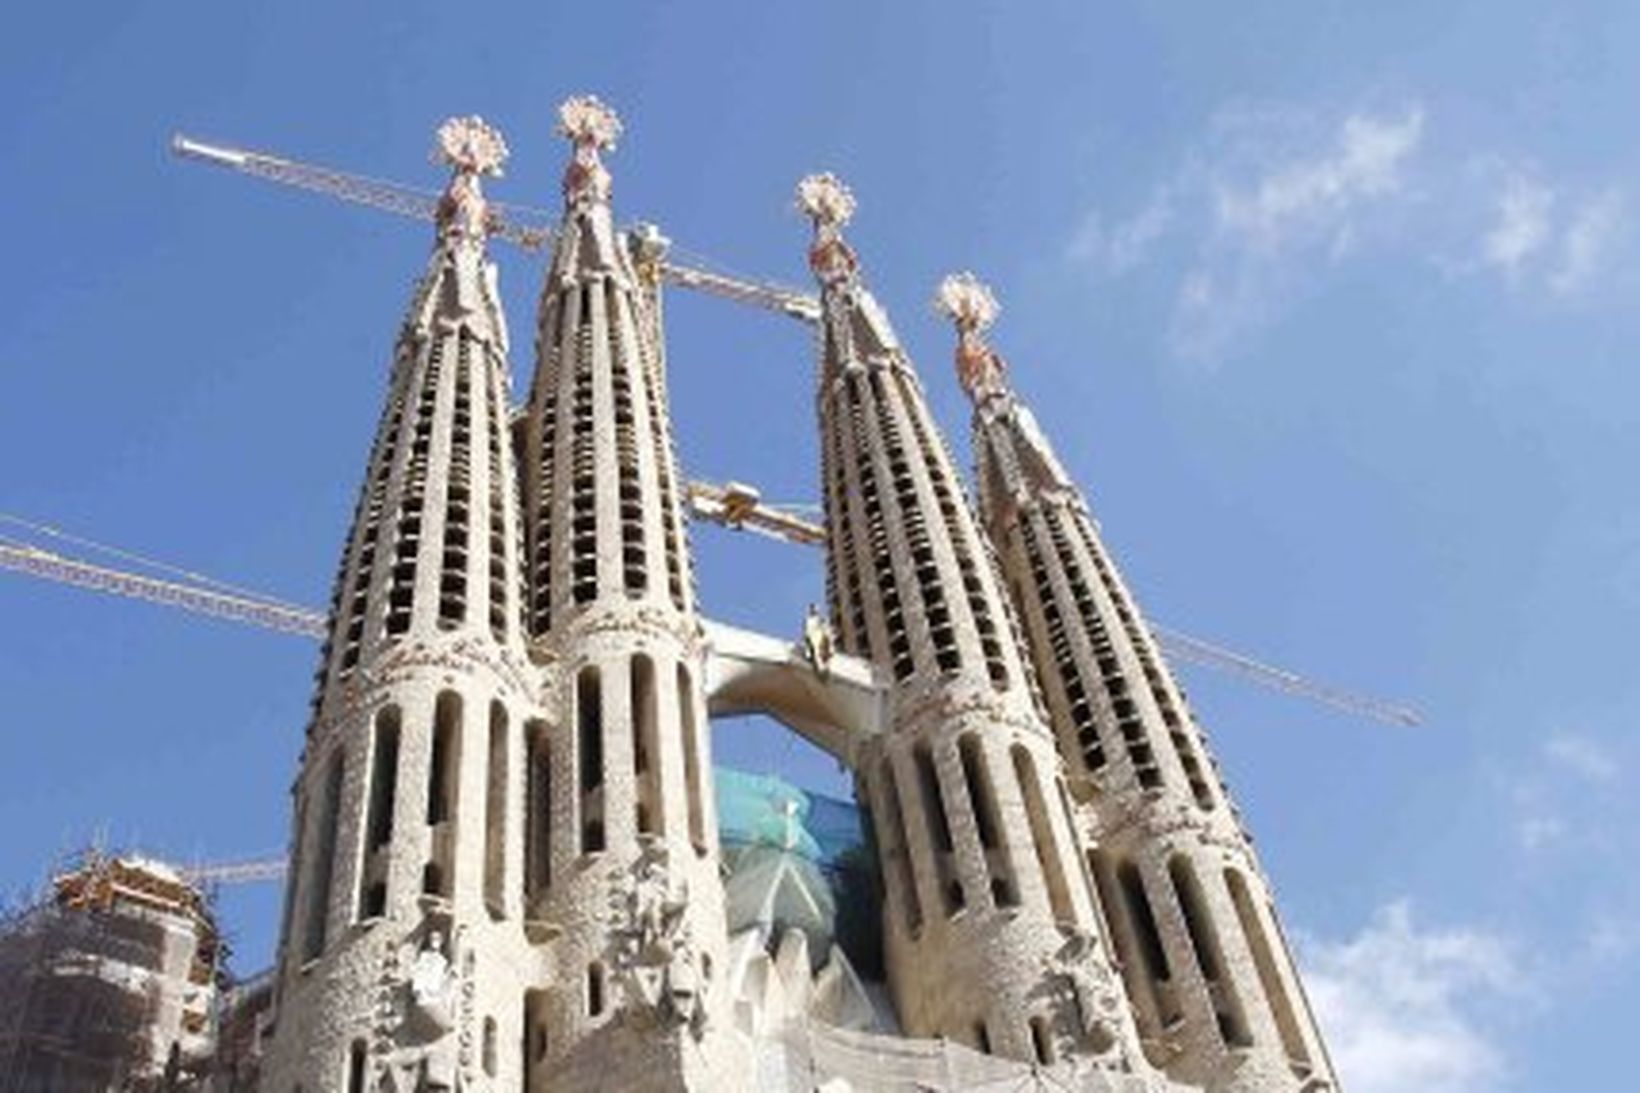 Sagrada Familia kirkjan í Barcelona er vinsæll áfangastaður ferðamanna